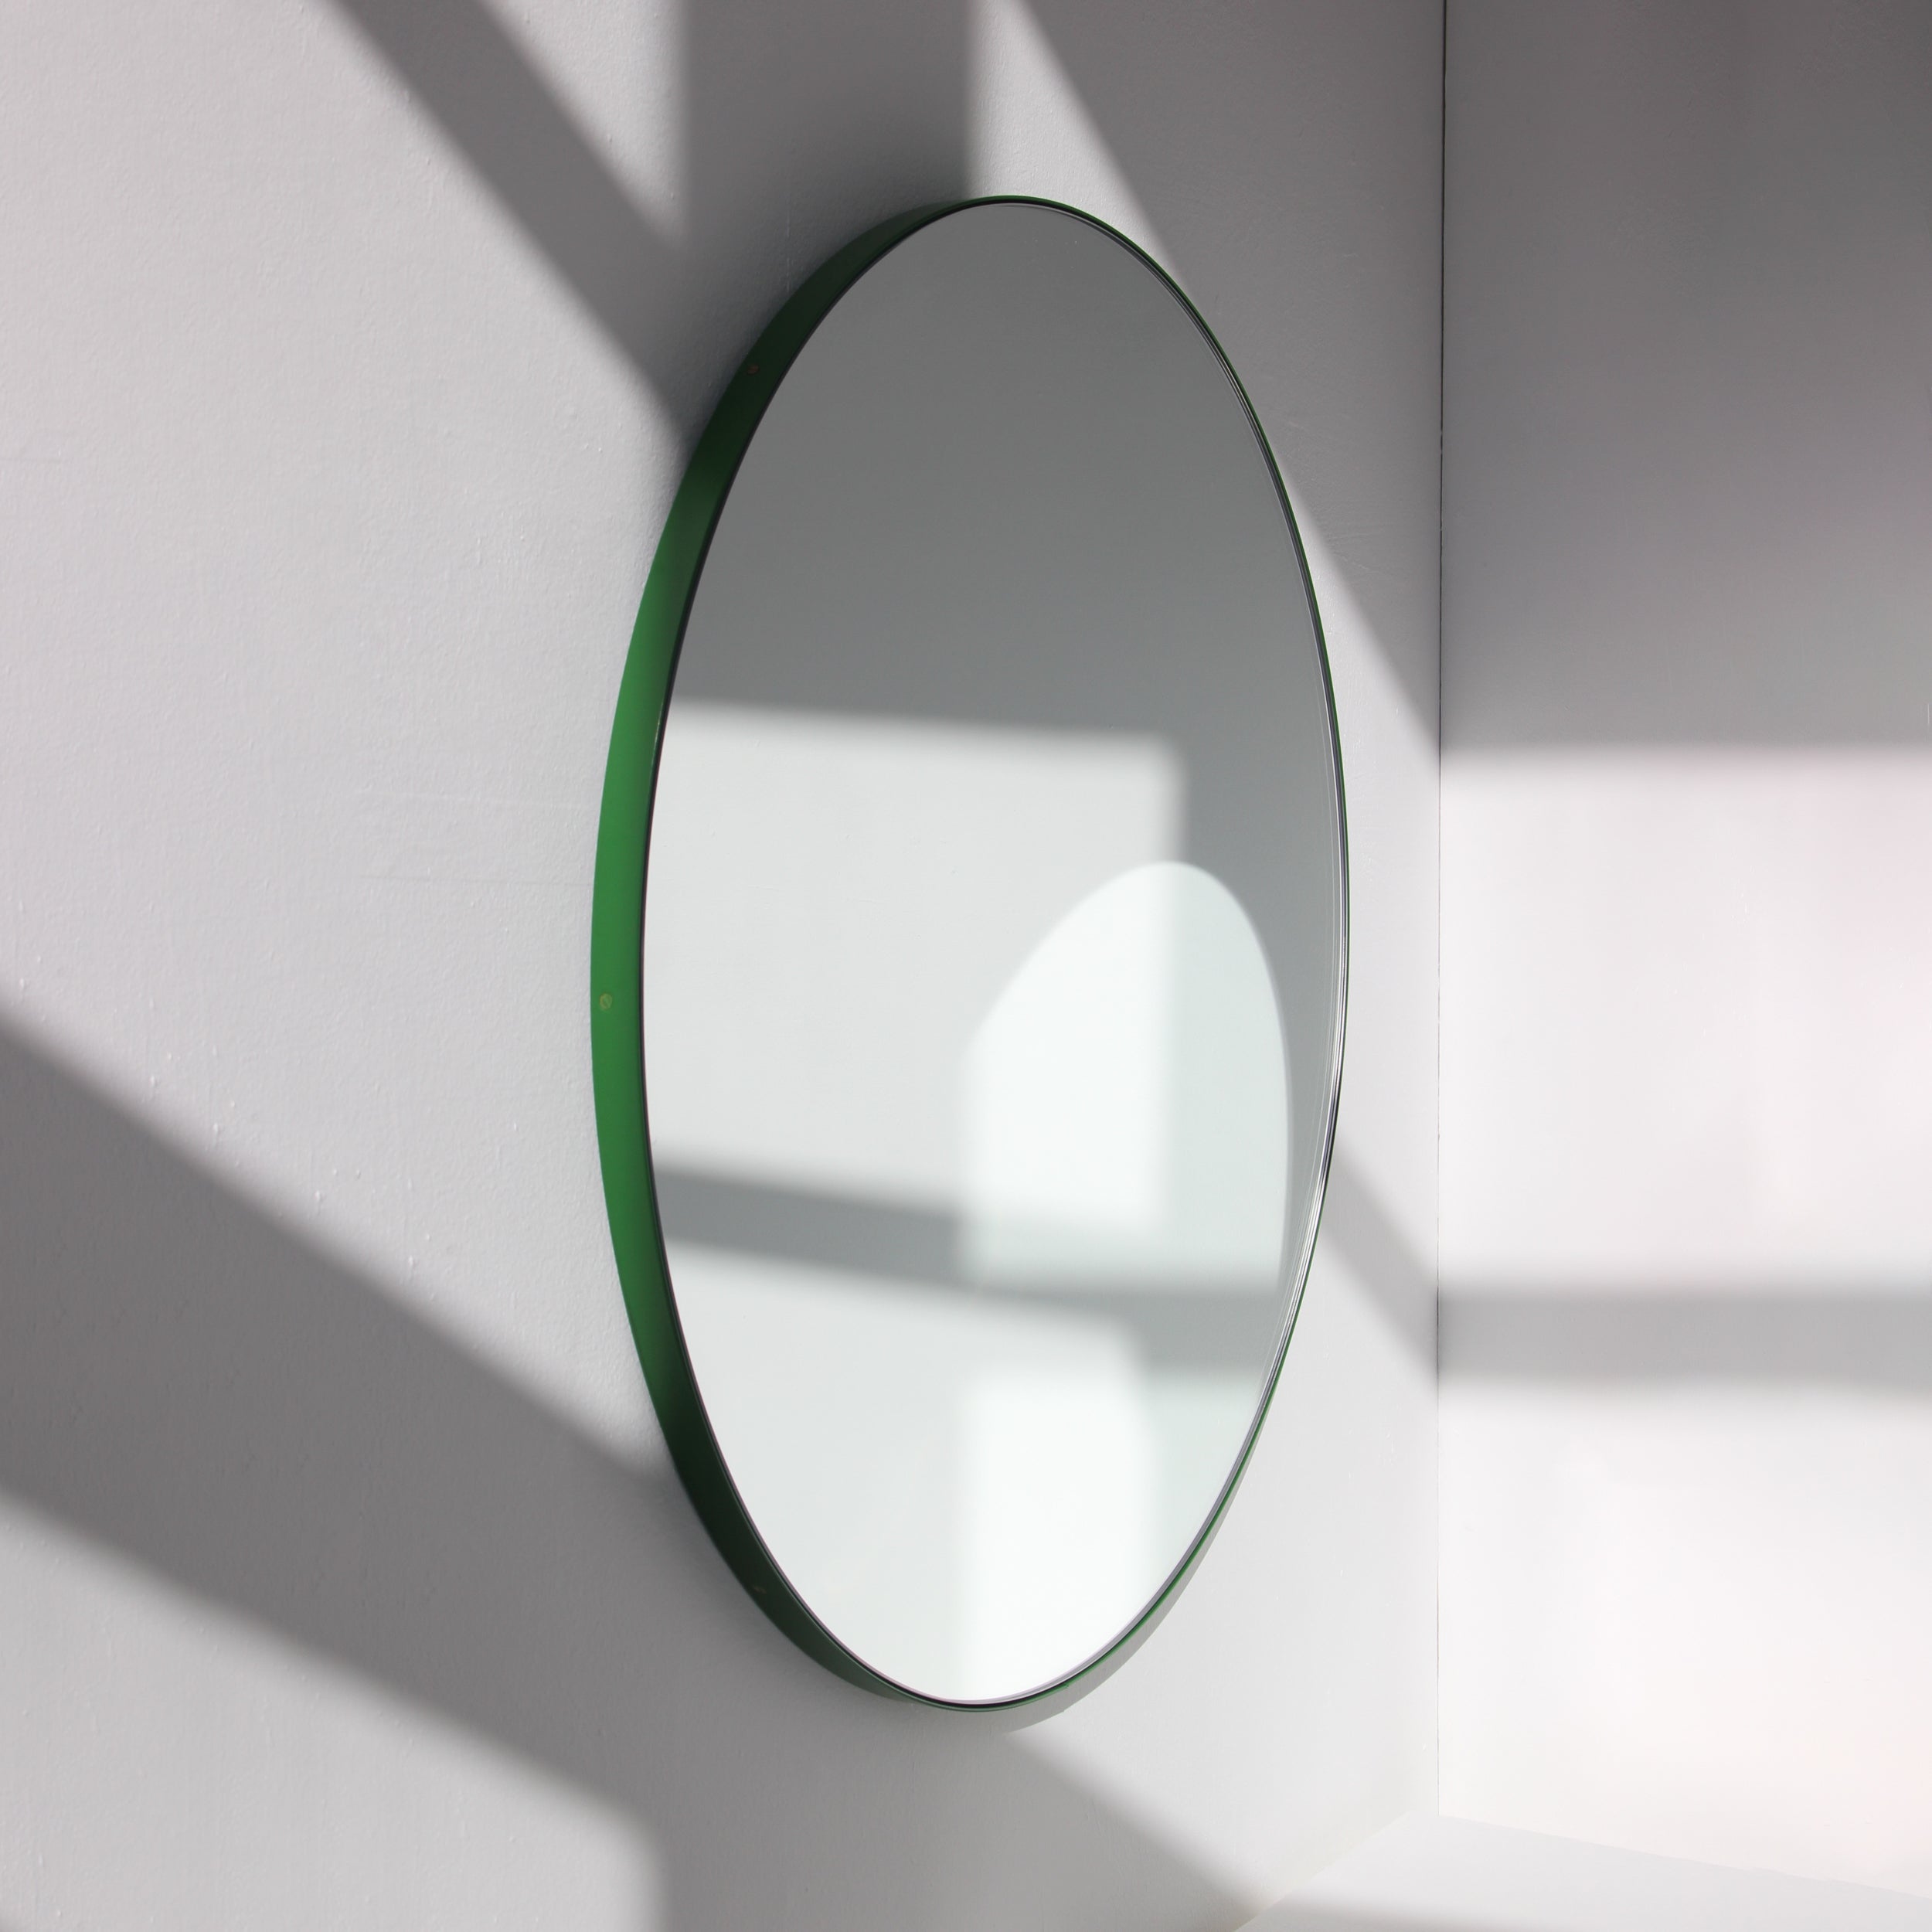 Orbis Round Modern Minimalist Mirror with Green Frame, XL For Sale